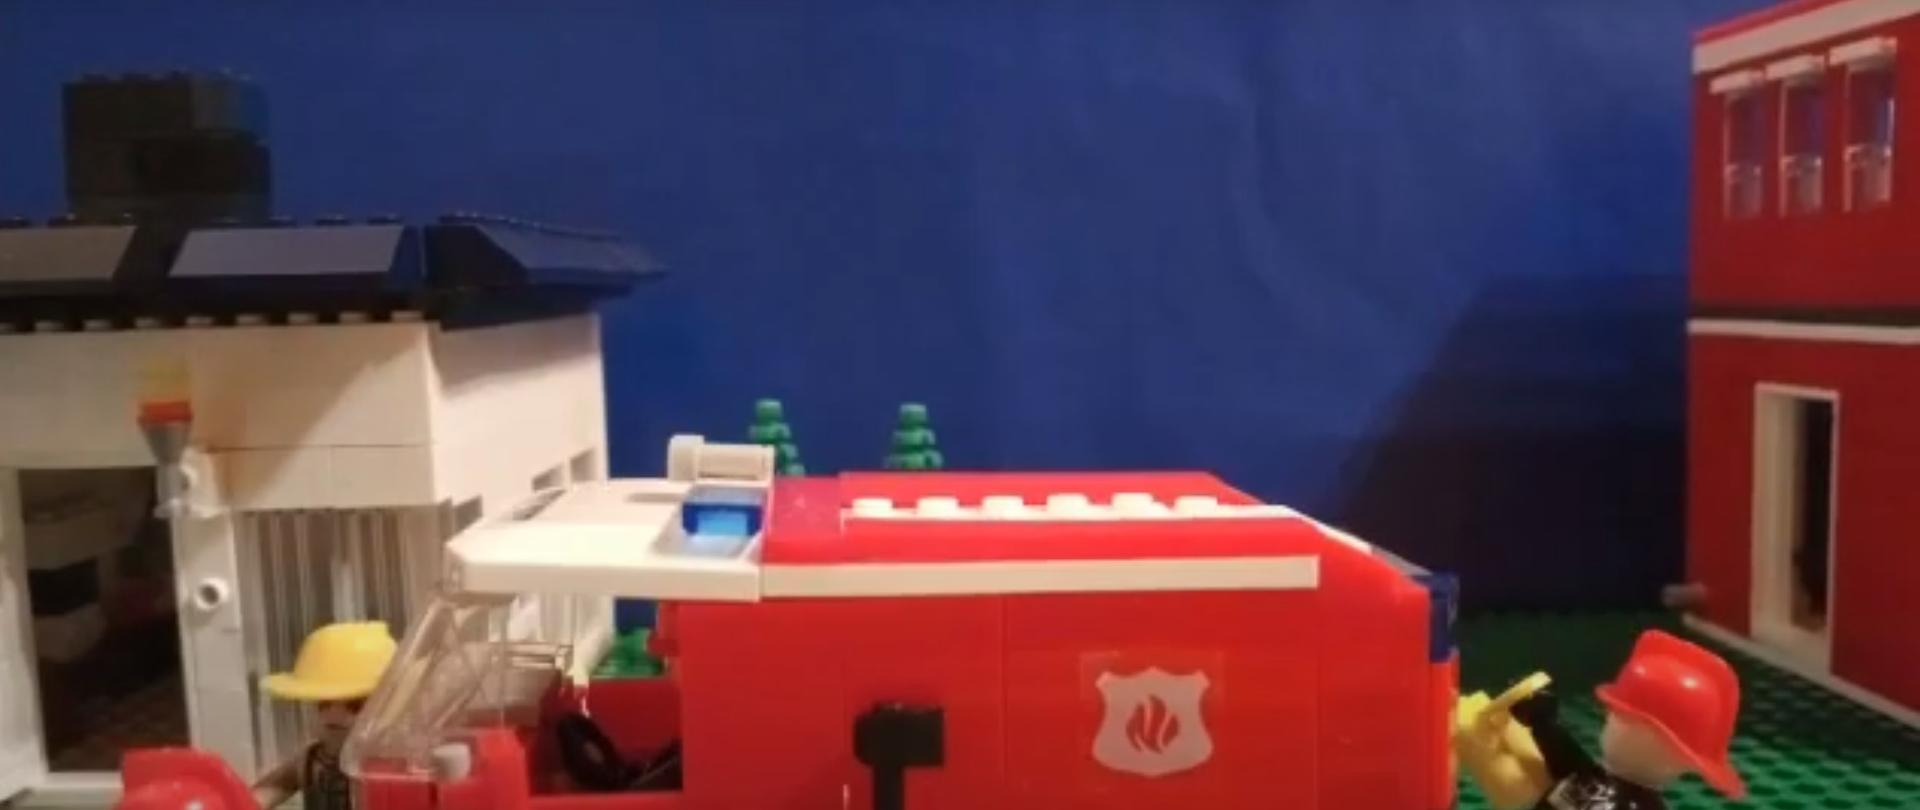 Zdjęcie przedstawia zrobionych z klocków LEGO strażaków w akcji. Na środku znajduje się czerwona straż, obok niej stoi dwóch strażaków. W tle widać dom oraz w prawym krańcu siedzibę PSP.